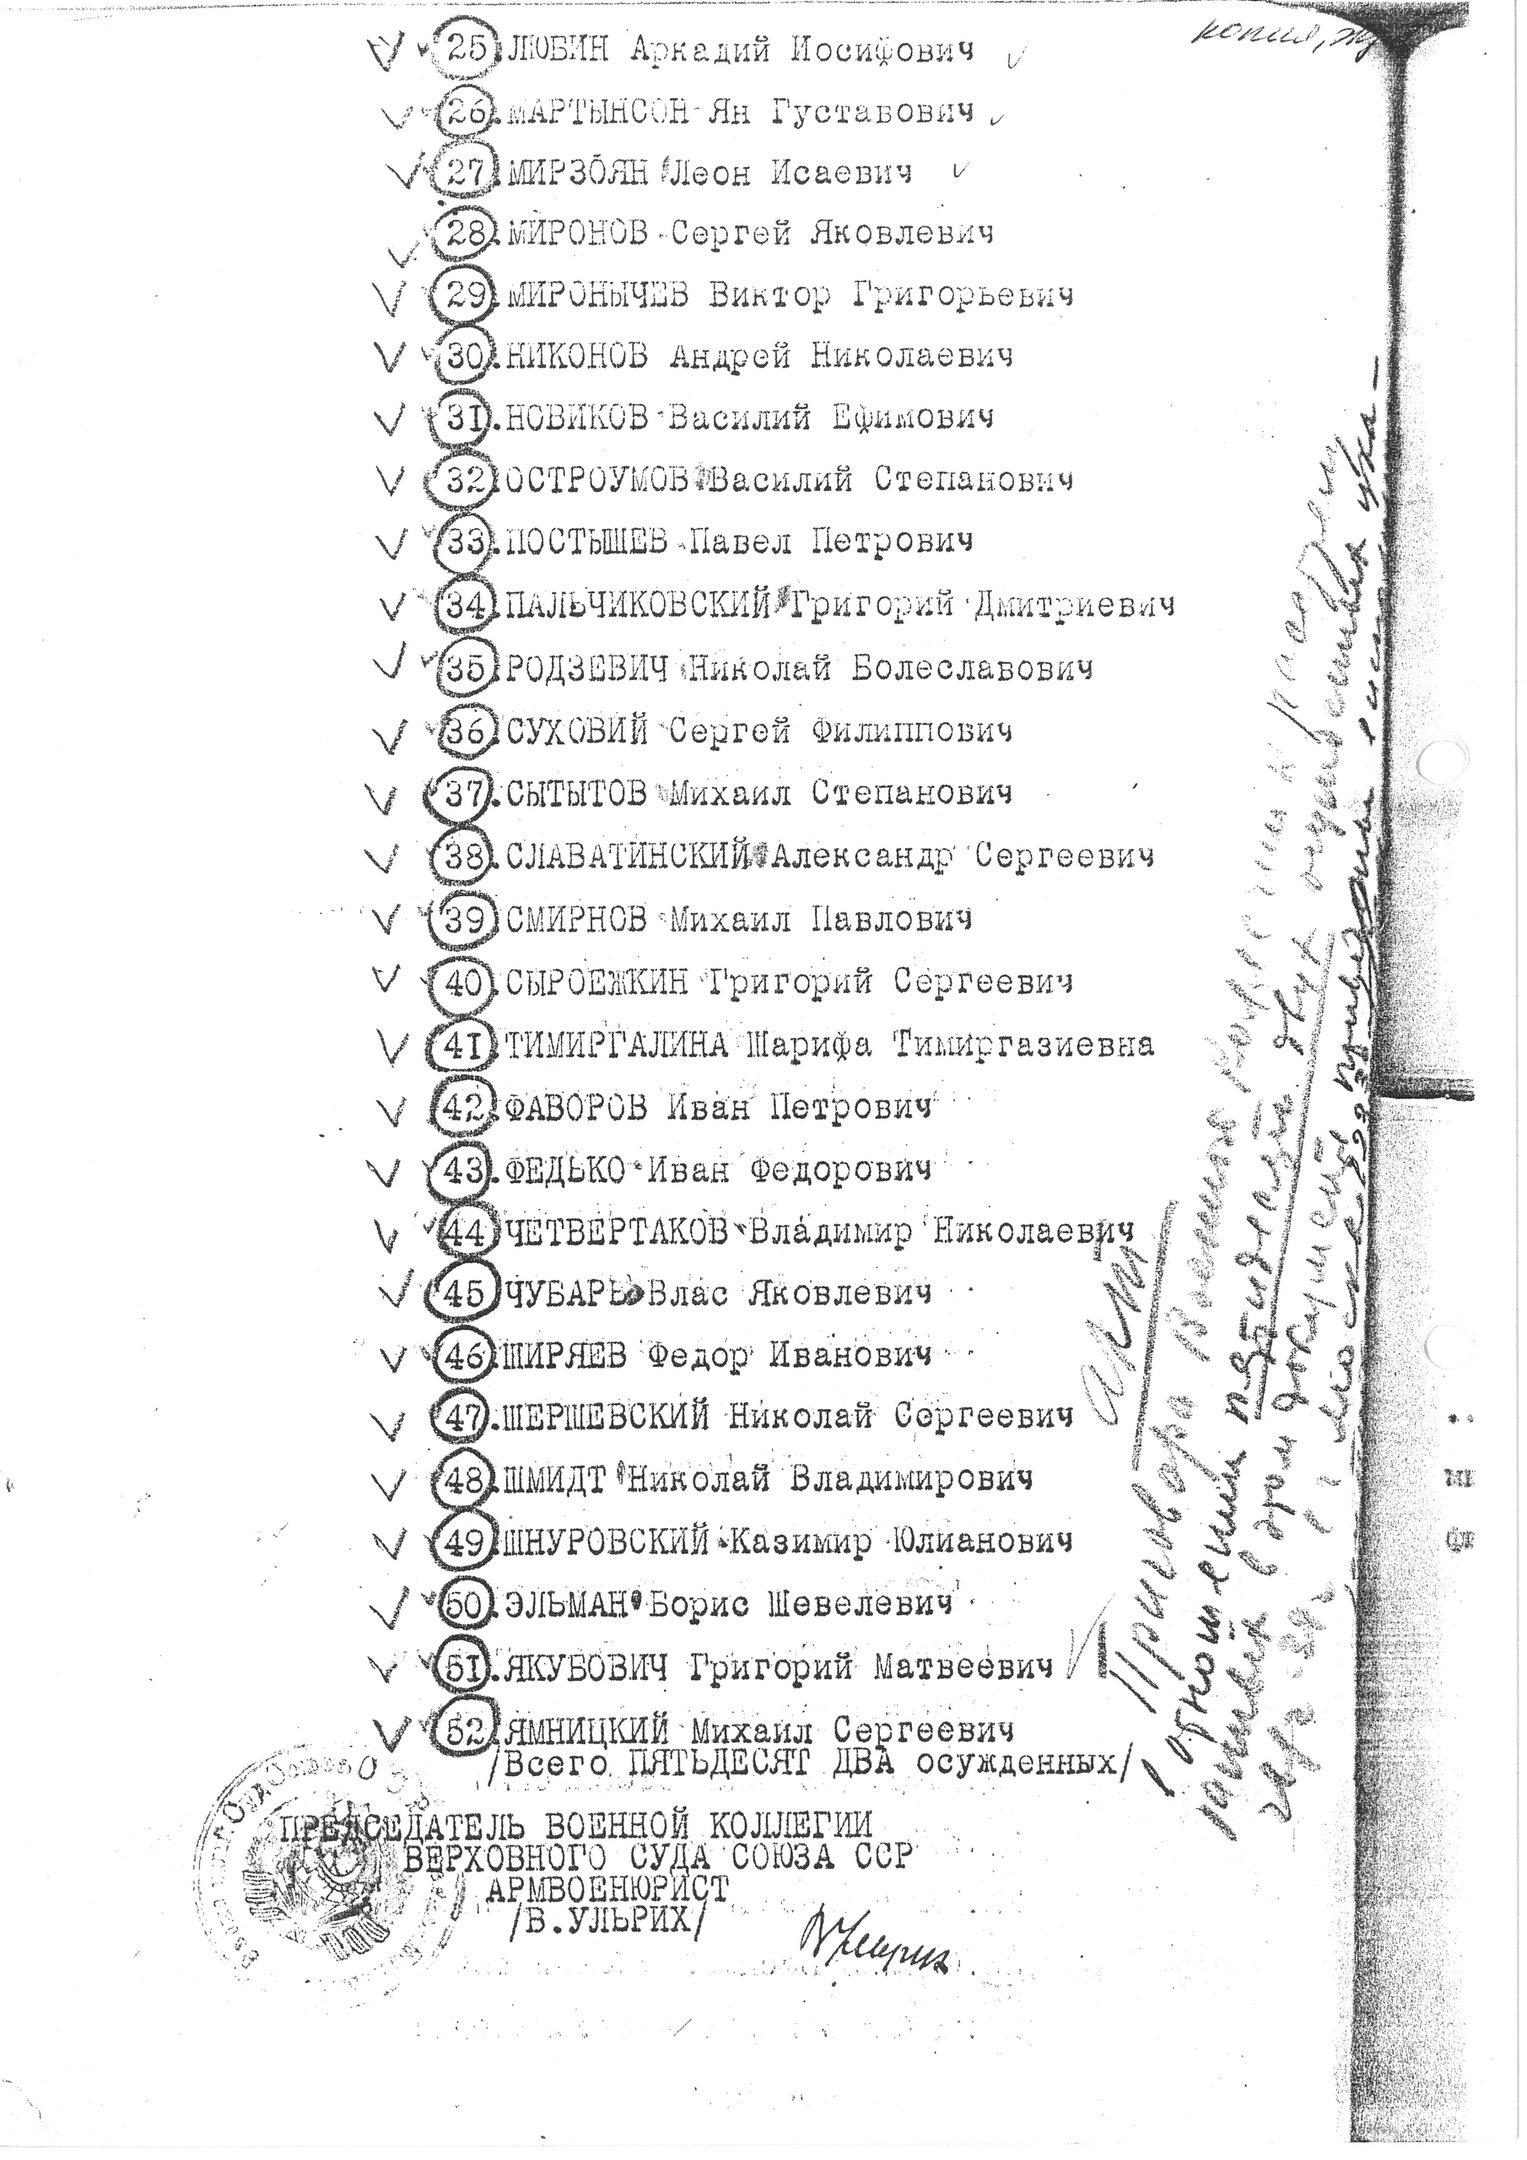 Предписание В. В. Ульриха к расстрелу В. М. Блохину от 26.2.1939 г.